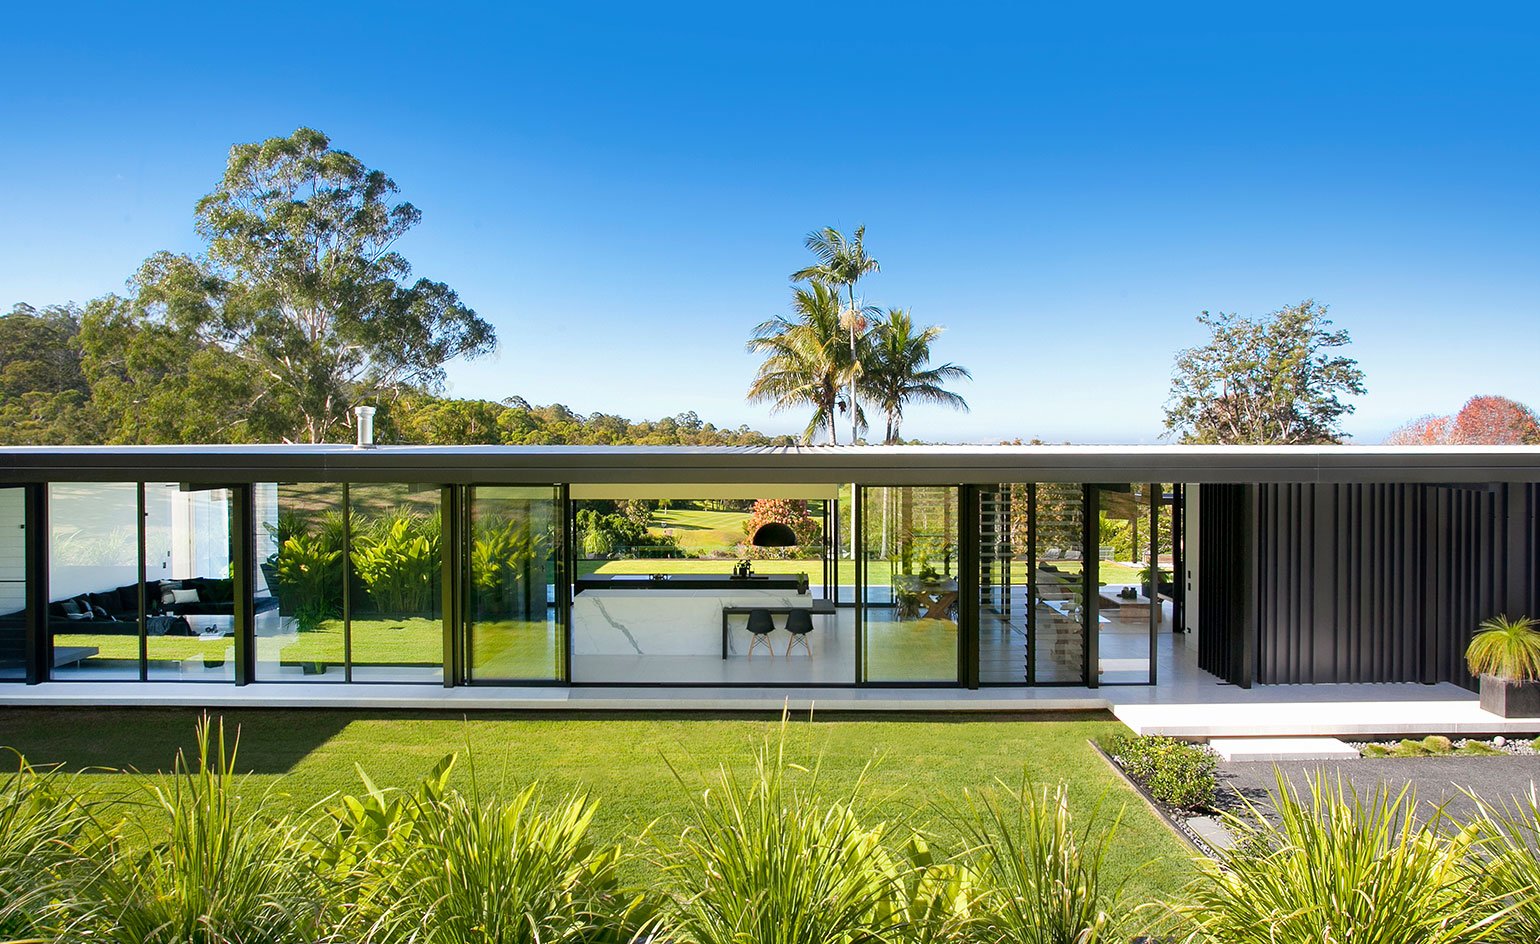 Contemporary house - architect Sarah Waller’s Doonan Glass House - front facade view